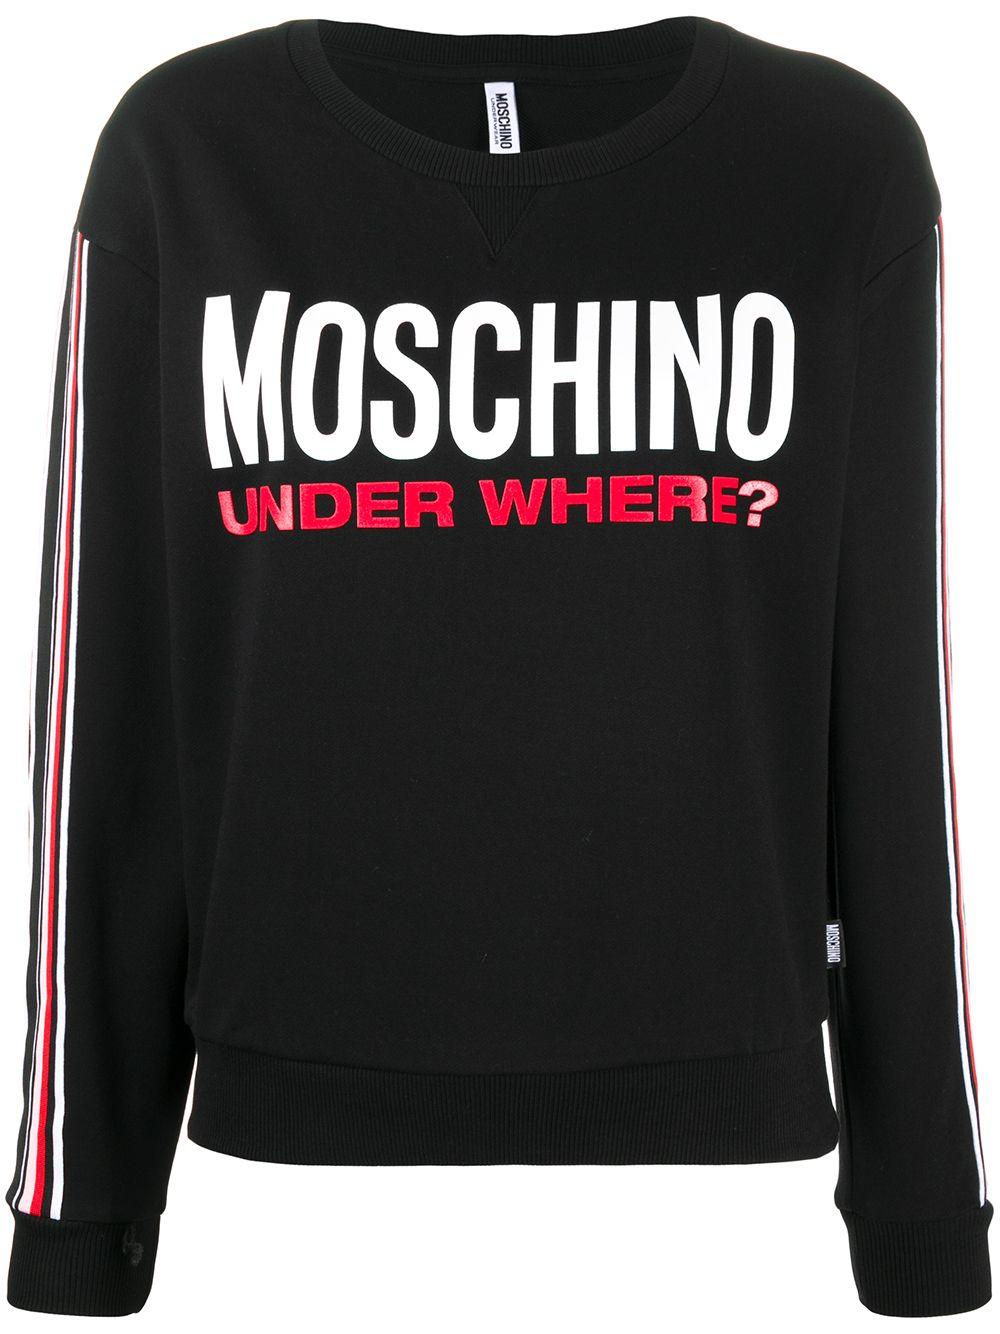 Moschino Cotton Under Where? Print Sweatshirt in Black - Save 2% - Lyst